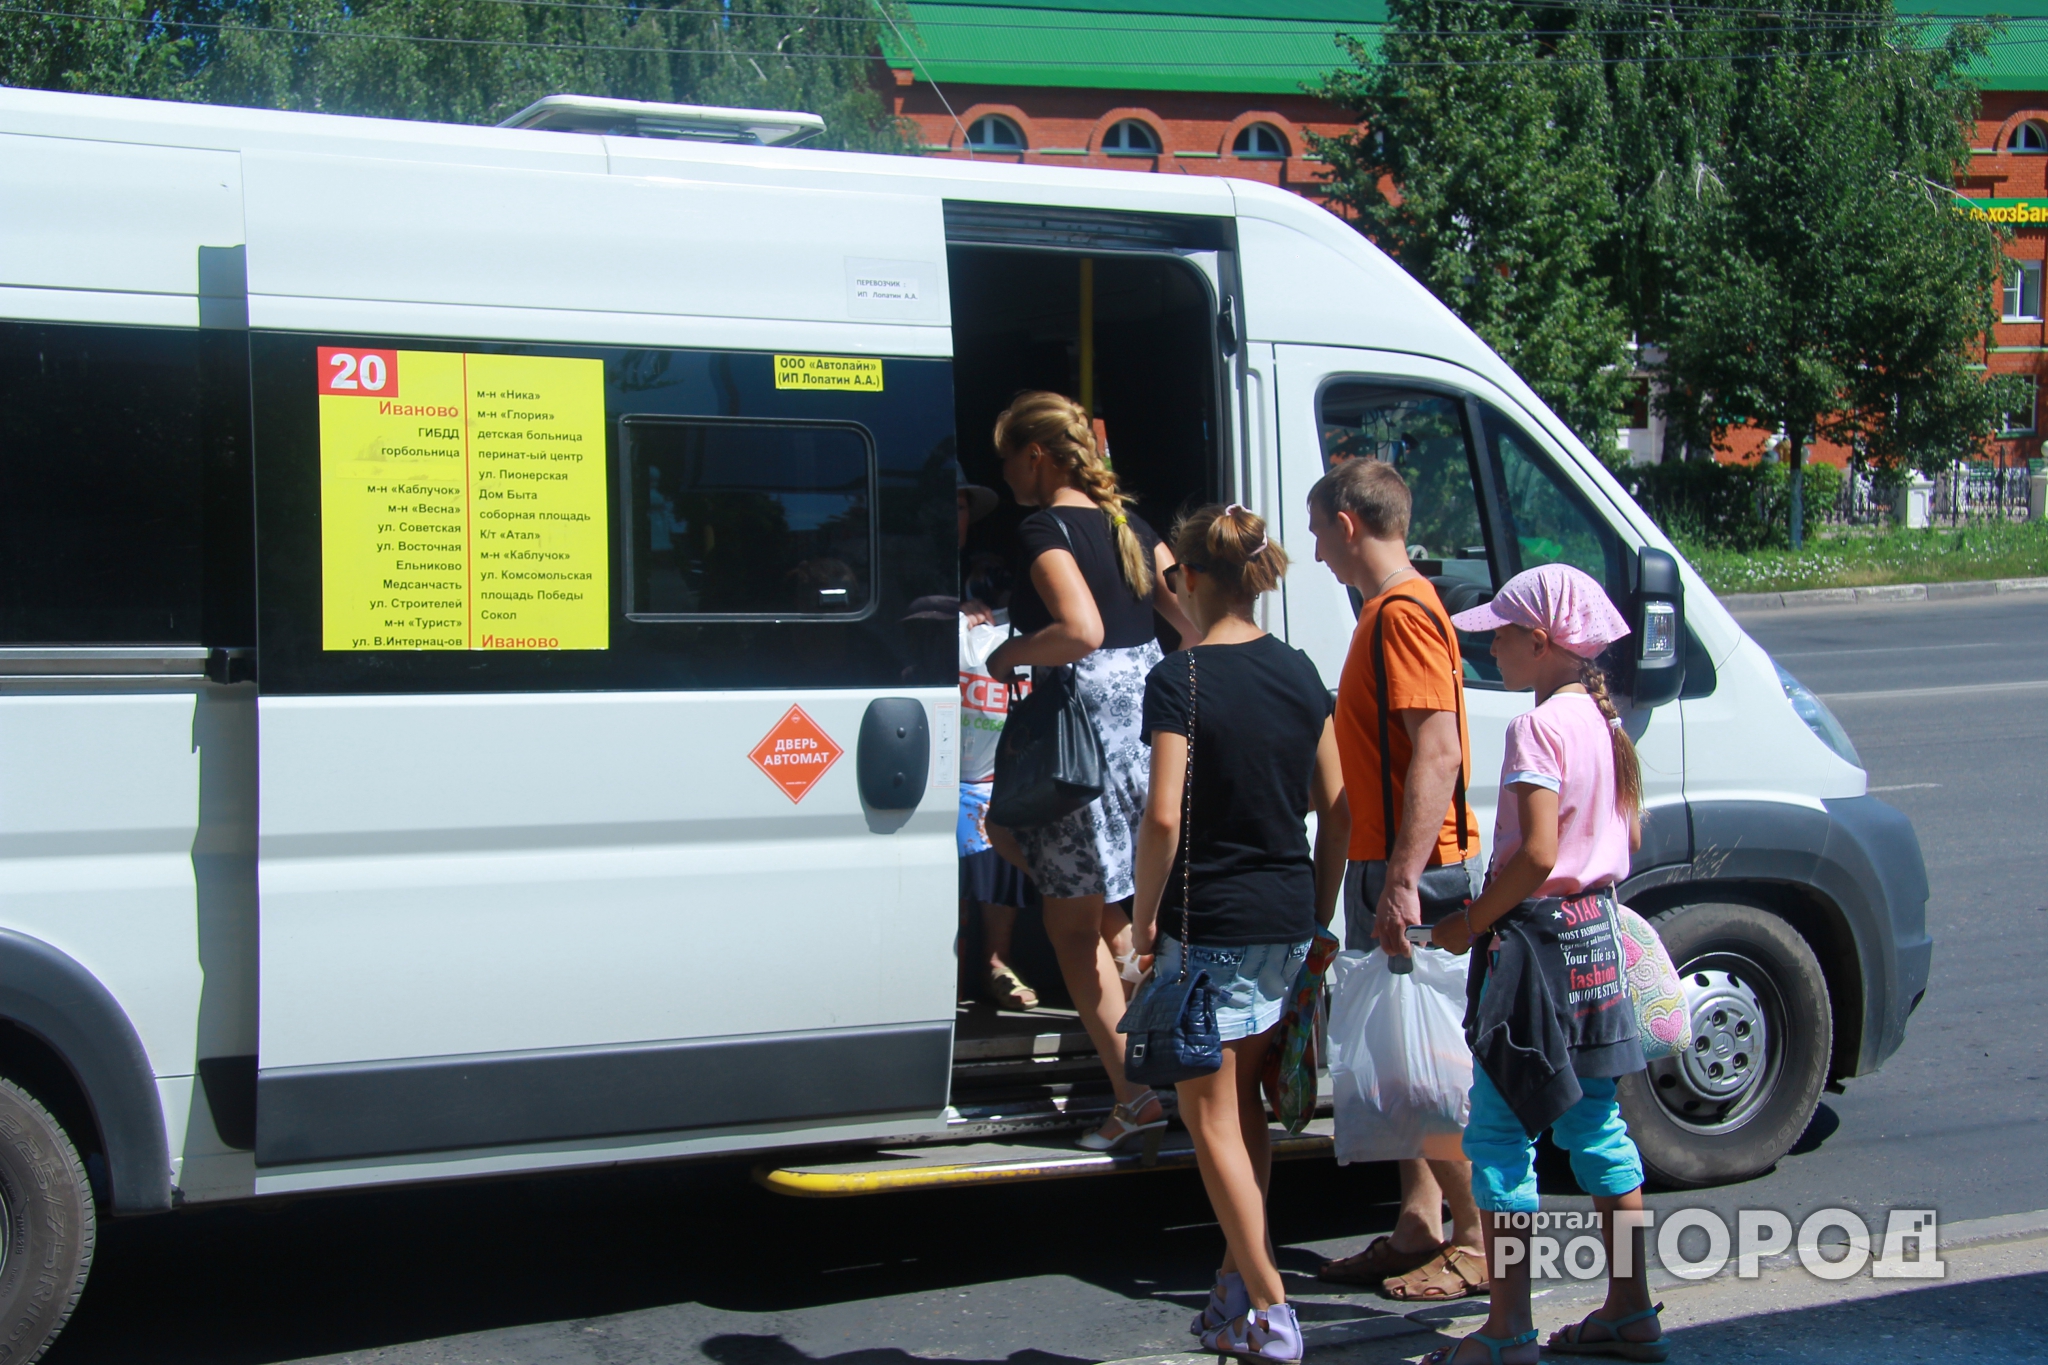 Николай Любимов: За перевозкой детей должен быть установлен жёсткий контроль